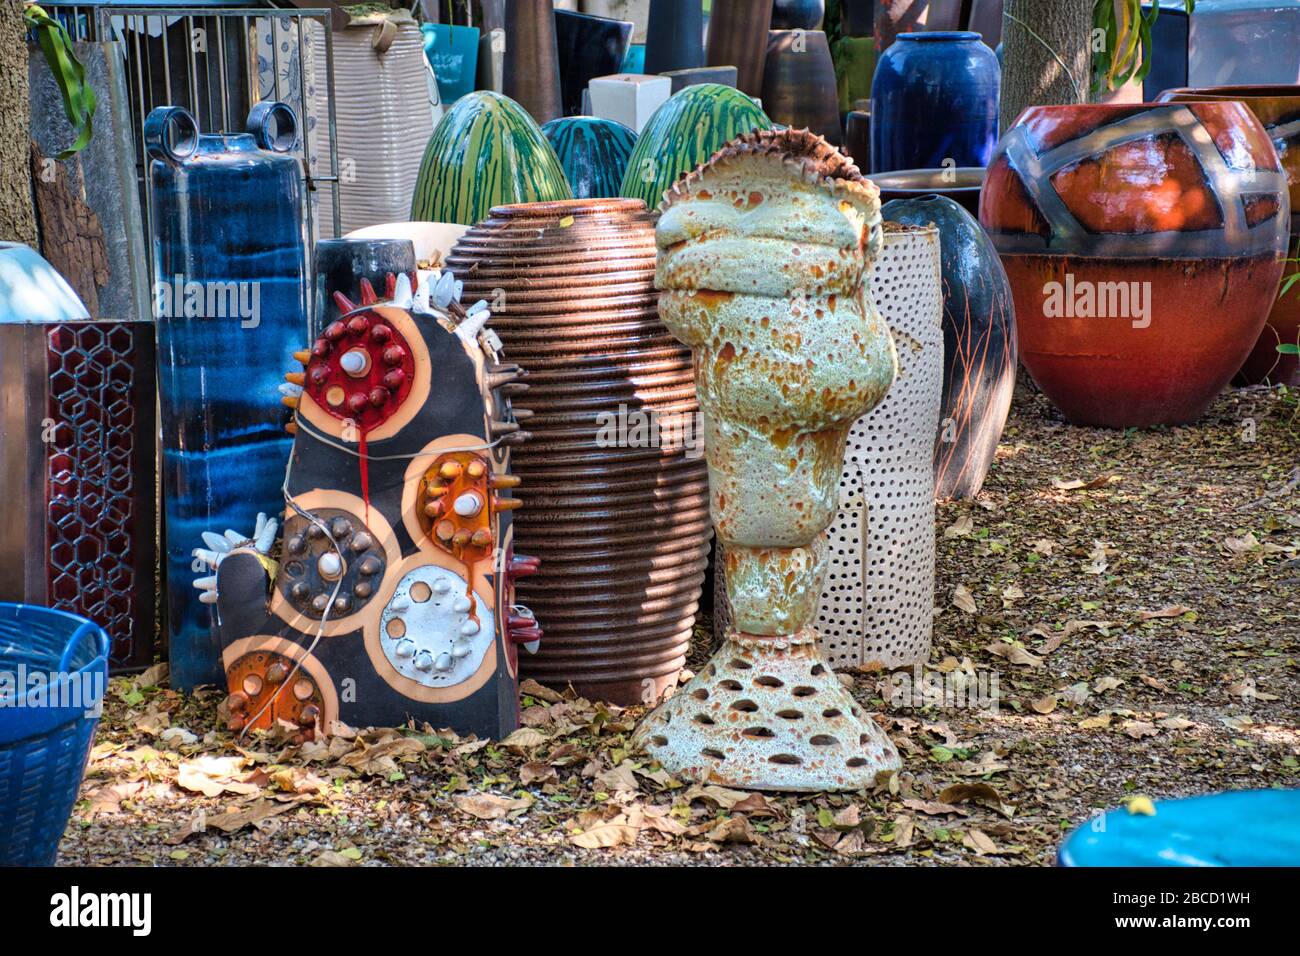 Incredibili splendidi e colorati prodotti in ceramica con molte forme diverse nel giardino della fabbrica di ceramiche Tao Hong Tai a Ratchaburi, tailandese Foto Stock